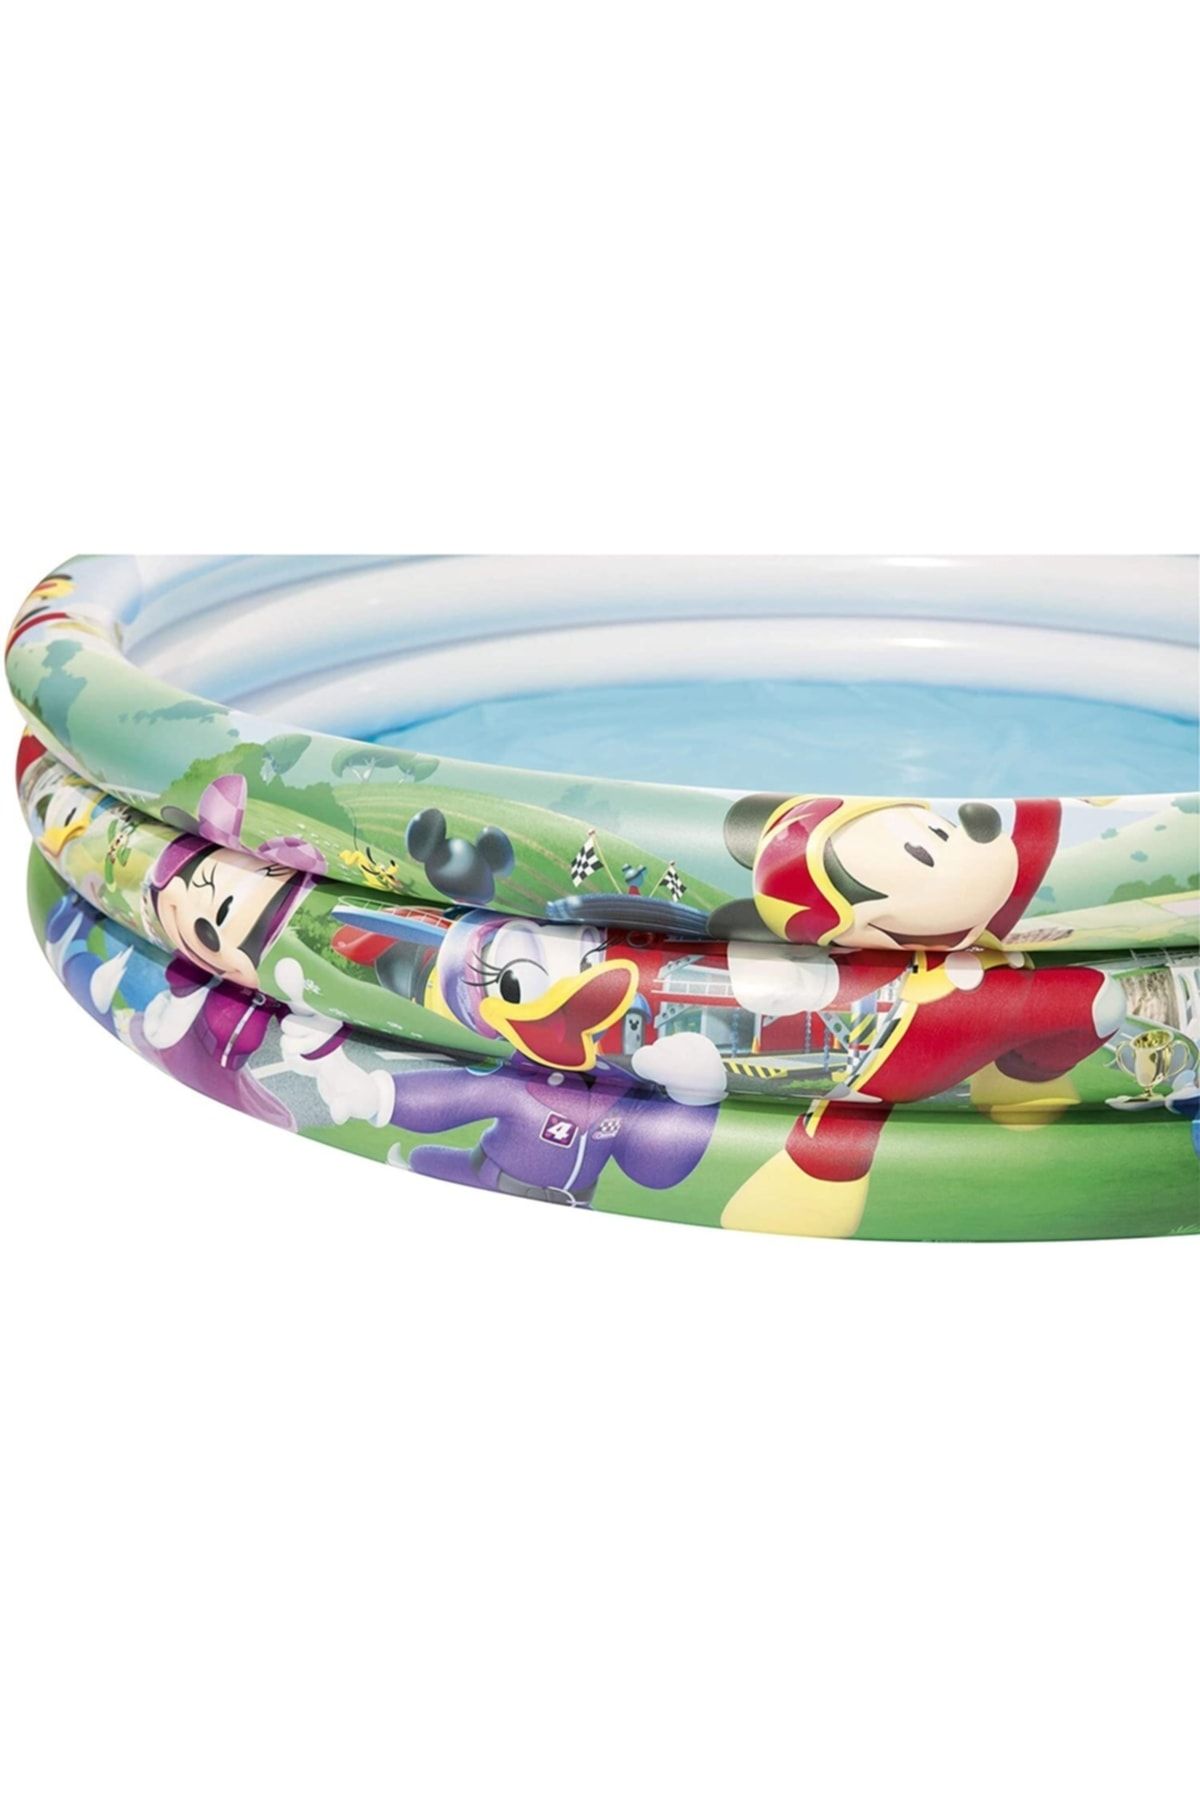 Sole Bestway 91007, Mickey Mouse Temalı Şişme Çocuk Havuzu -bw67001